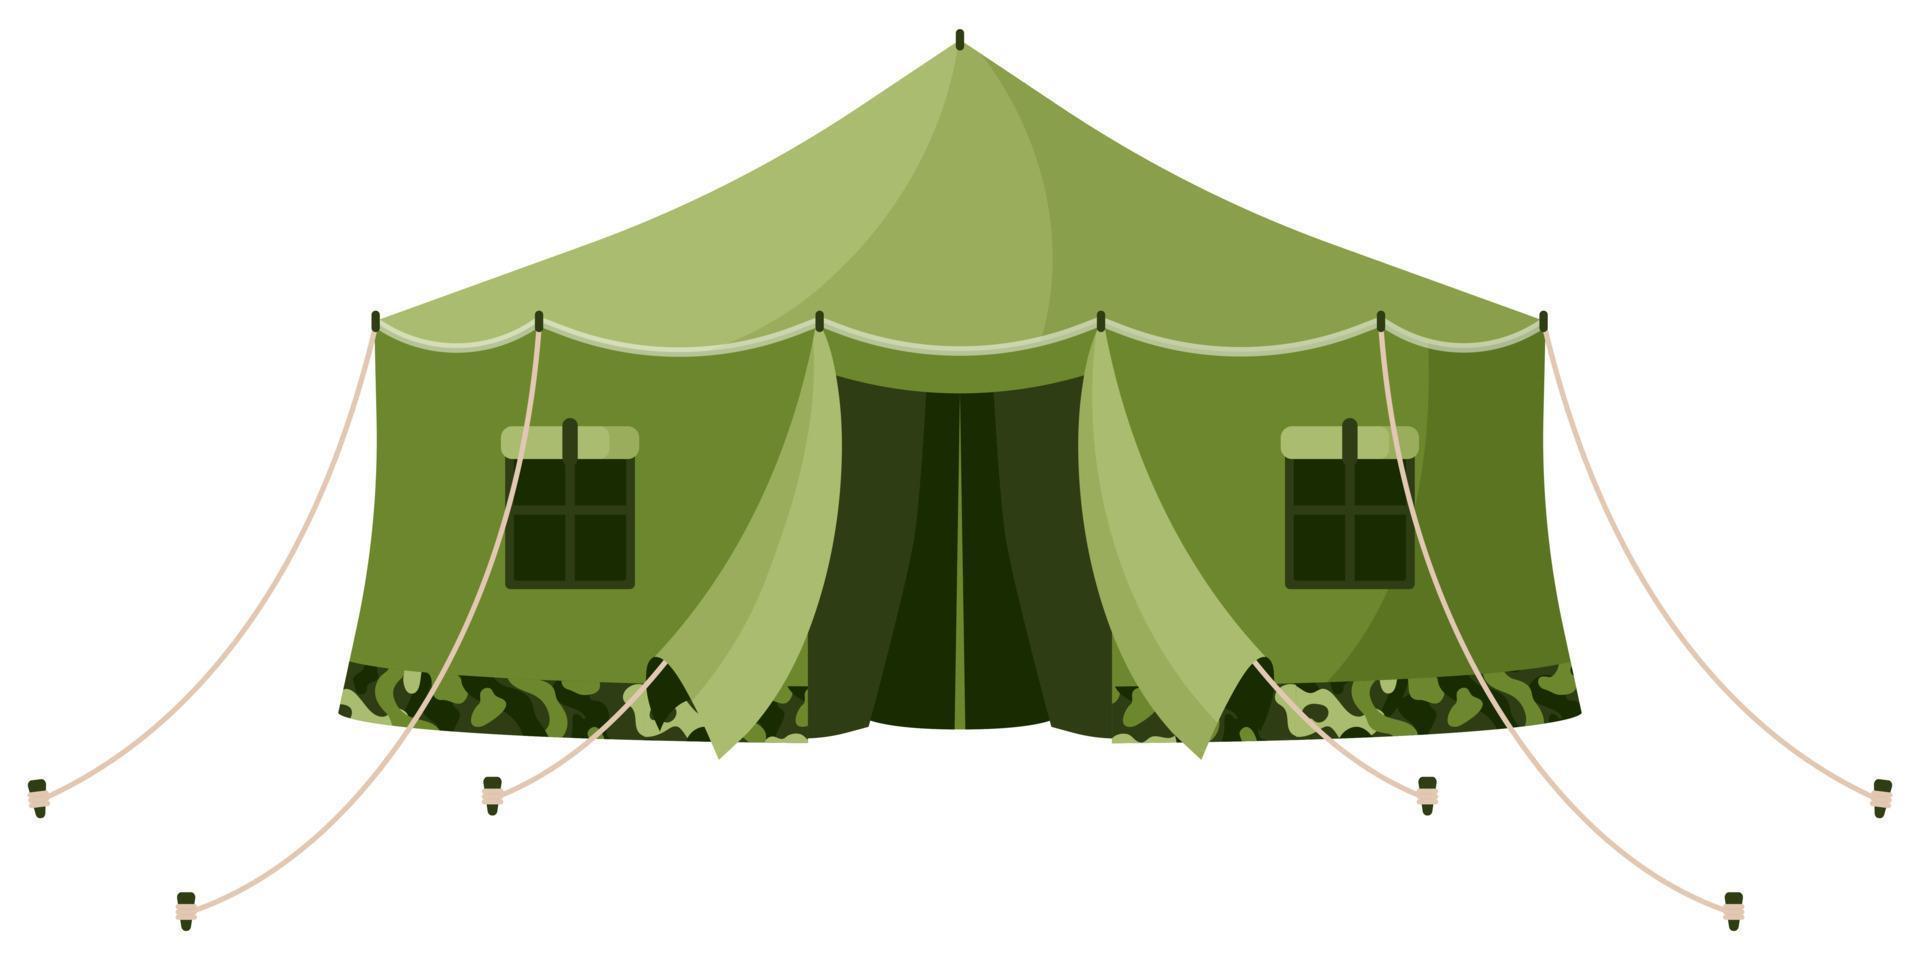 vue de face de la tente de bâche militaire de camouflage vert kaki. équipement touristique pour le camping et le tourisme. vecteur